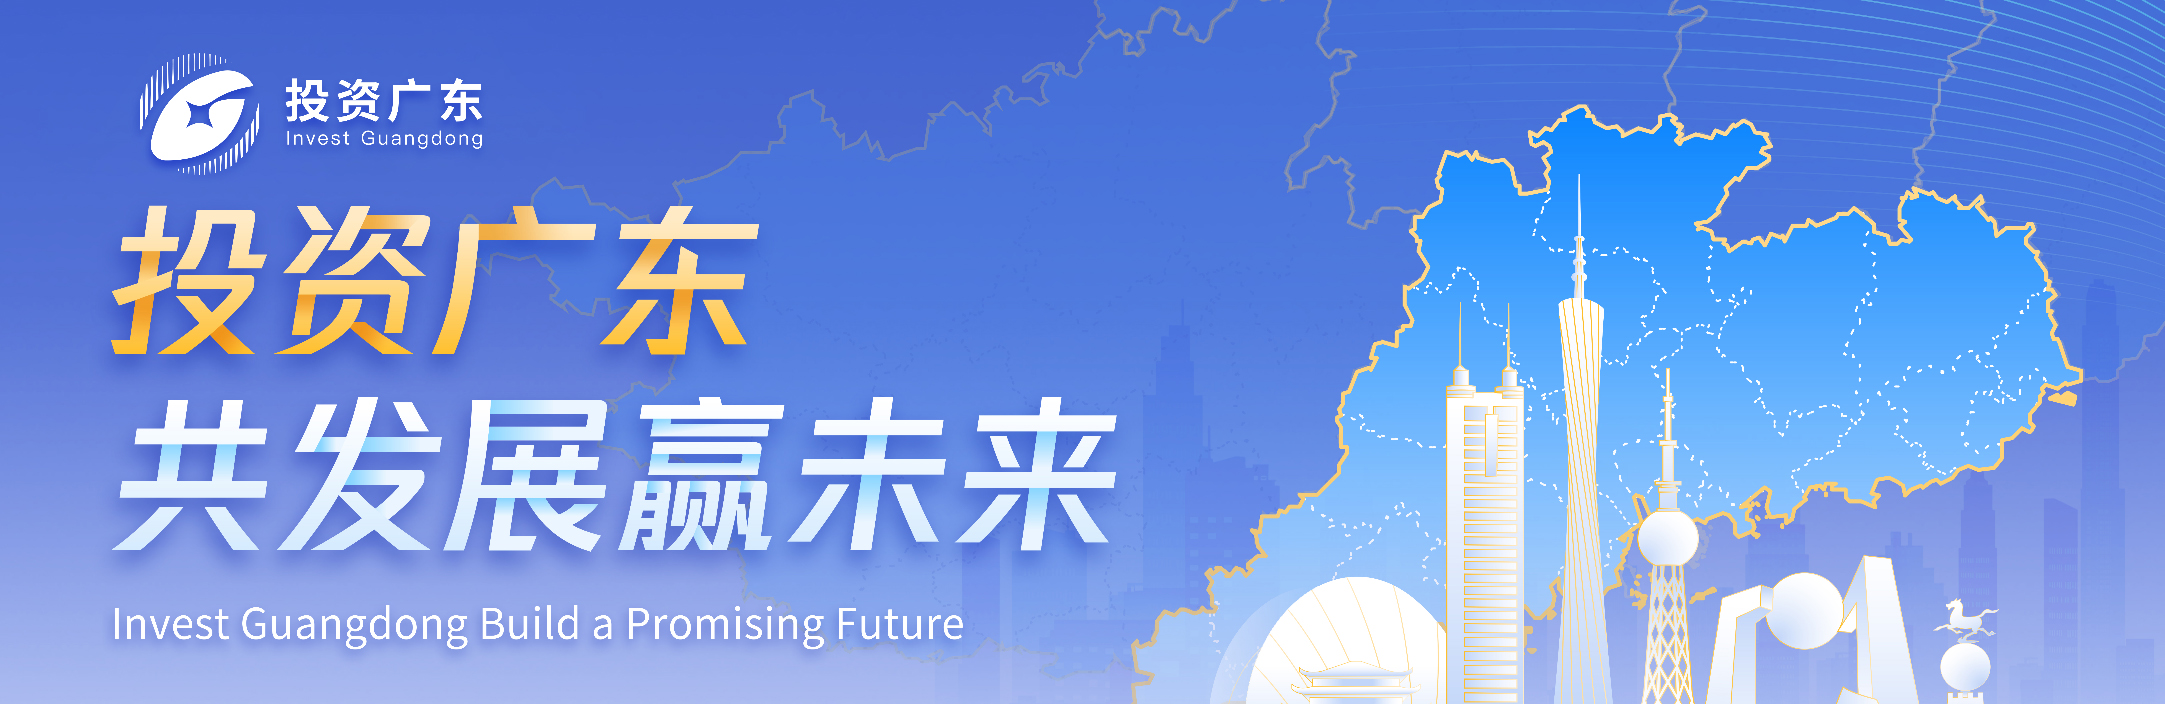 投资广东-共发展赢未来